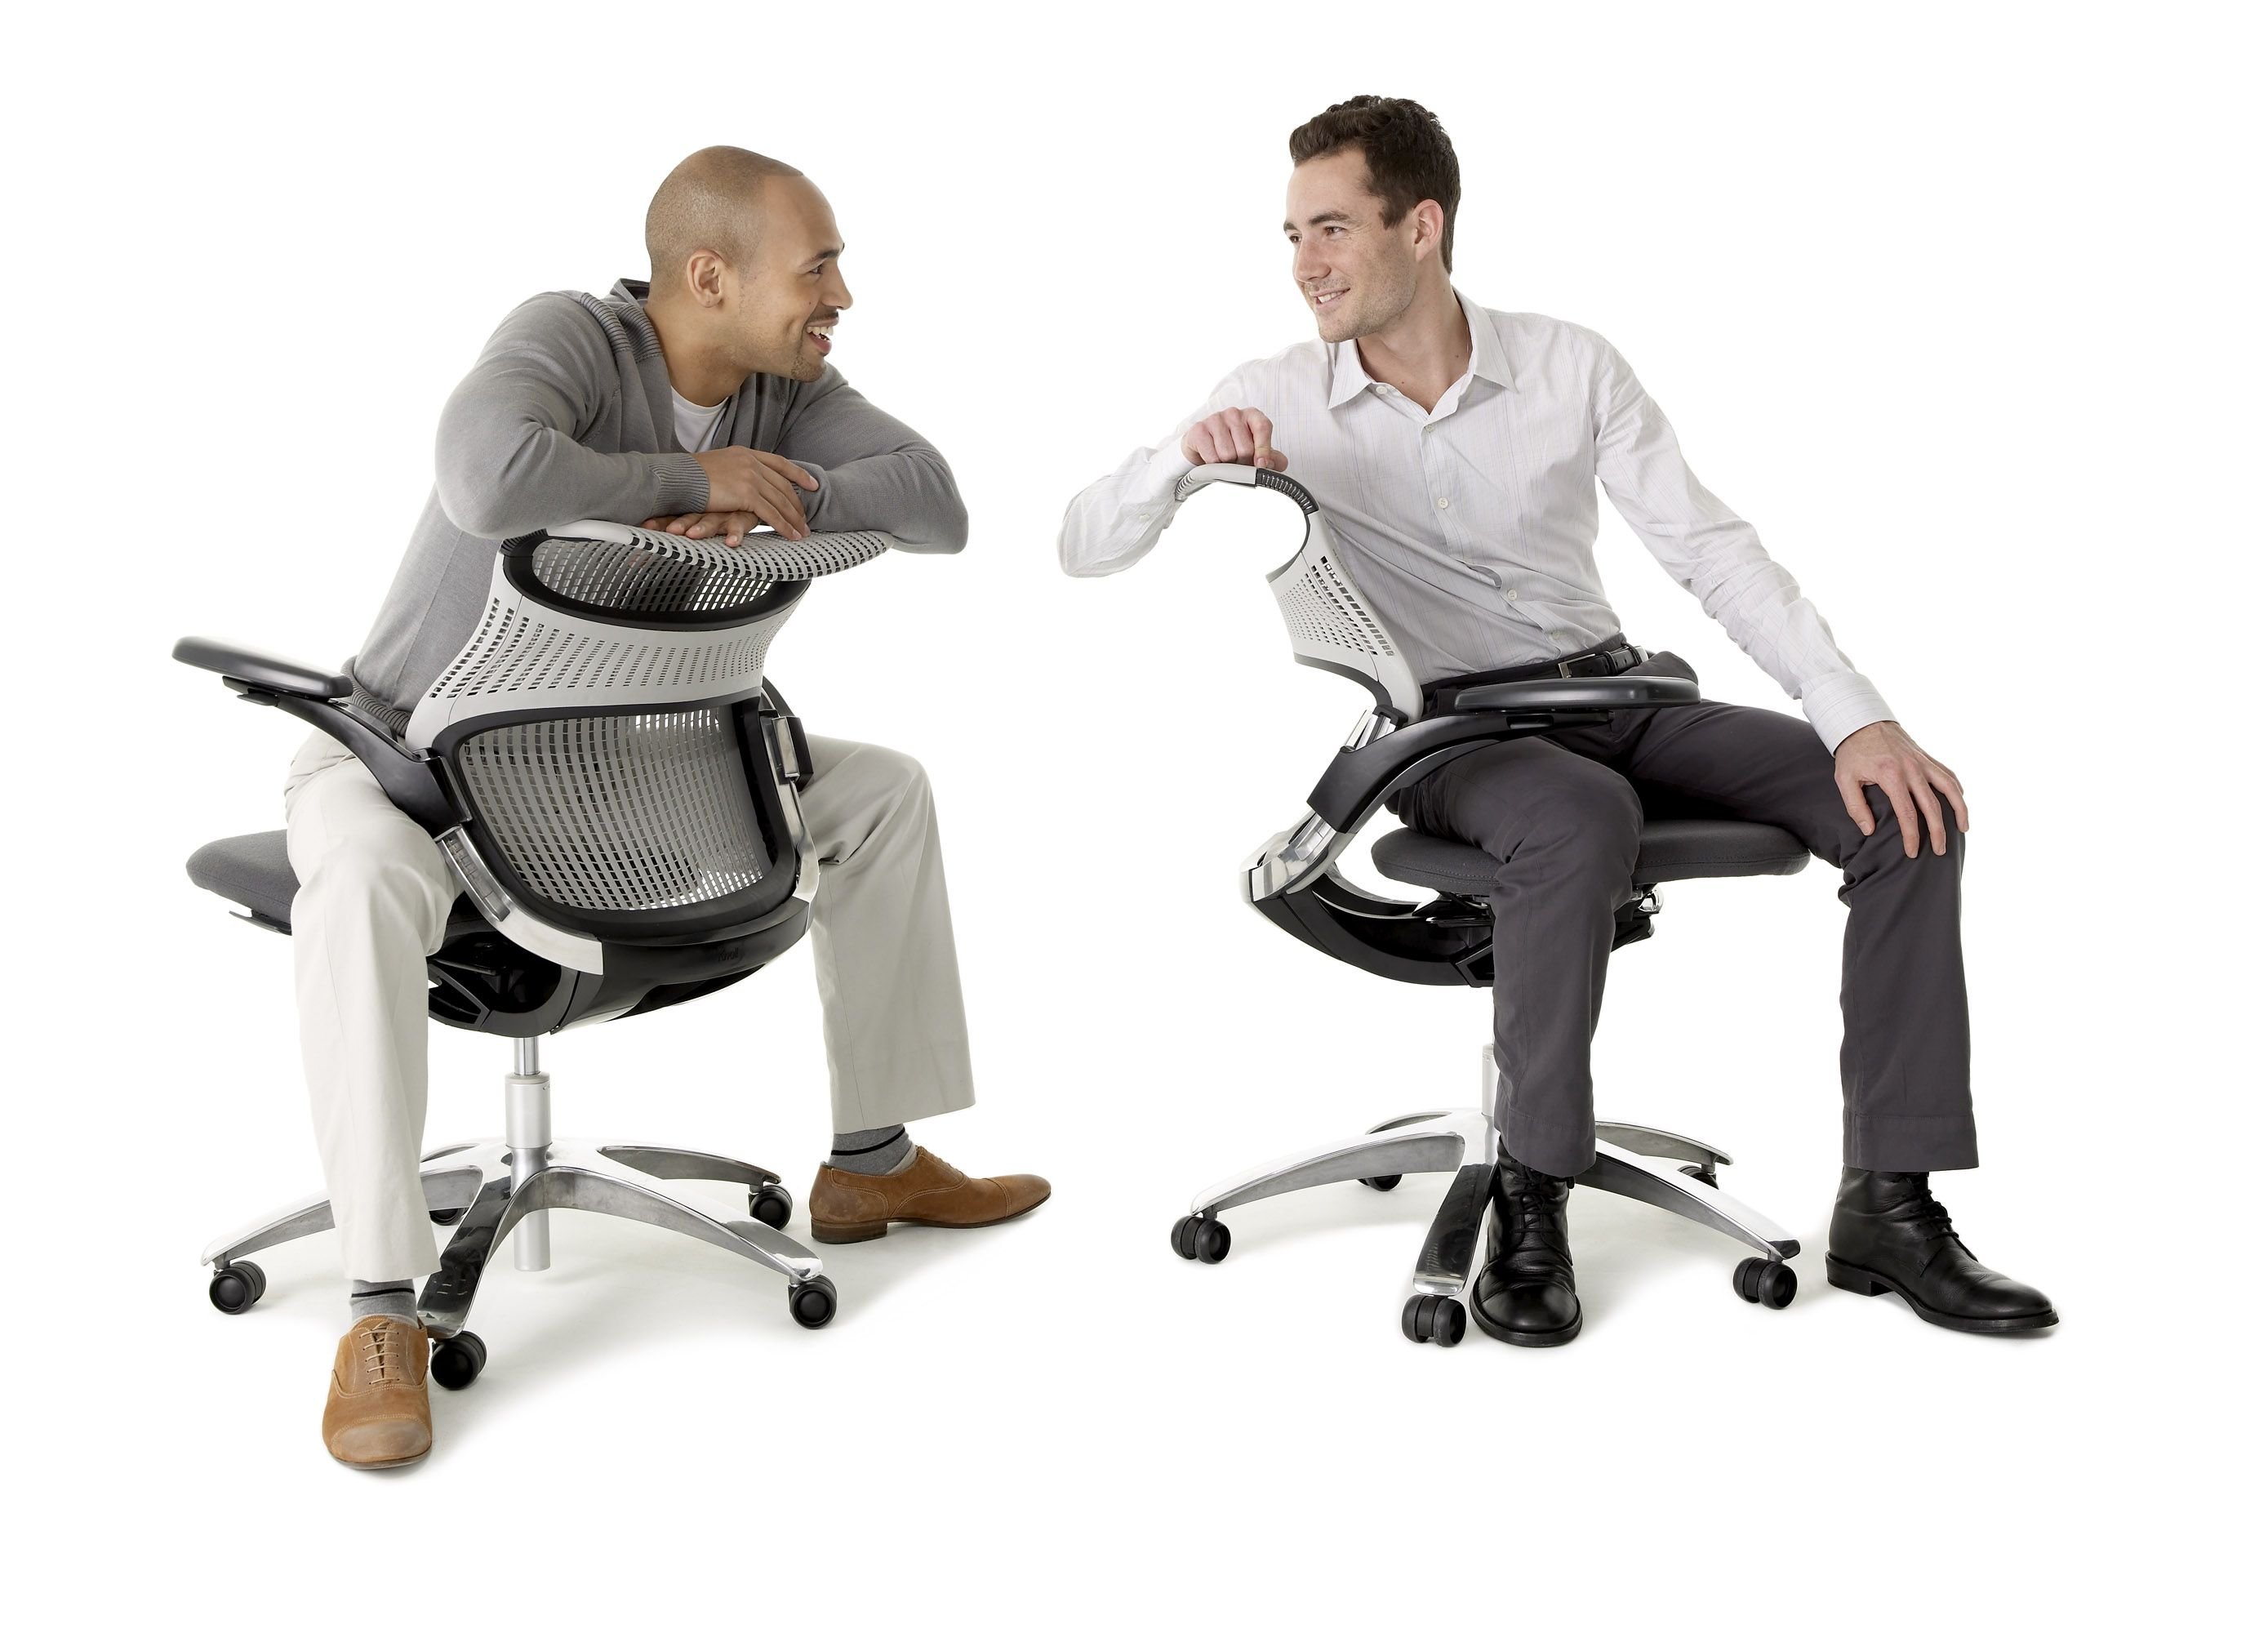 Кресло с поддержками офисное. Knoll Generation кресло. Офисный работник в кресле. Стул сотрудника. Кресло для сотрудников.